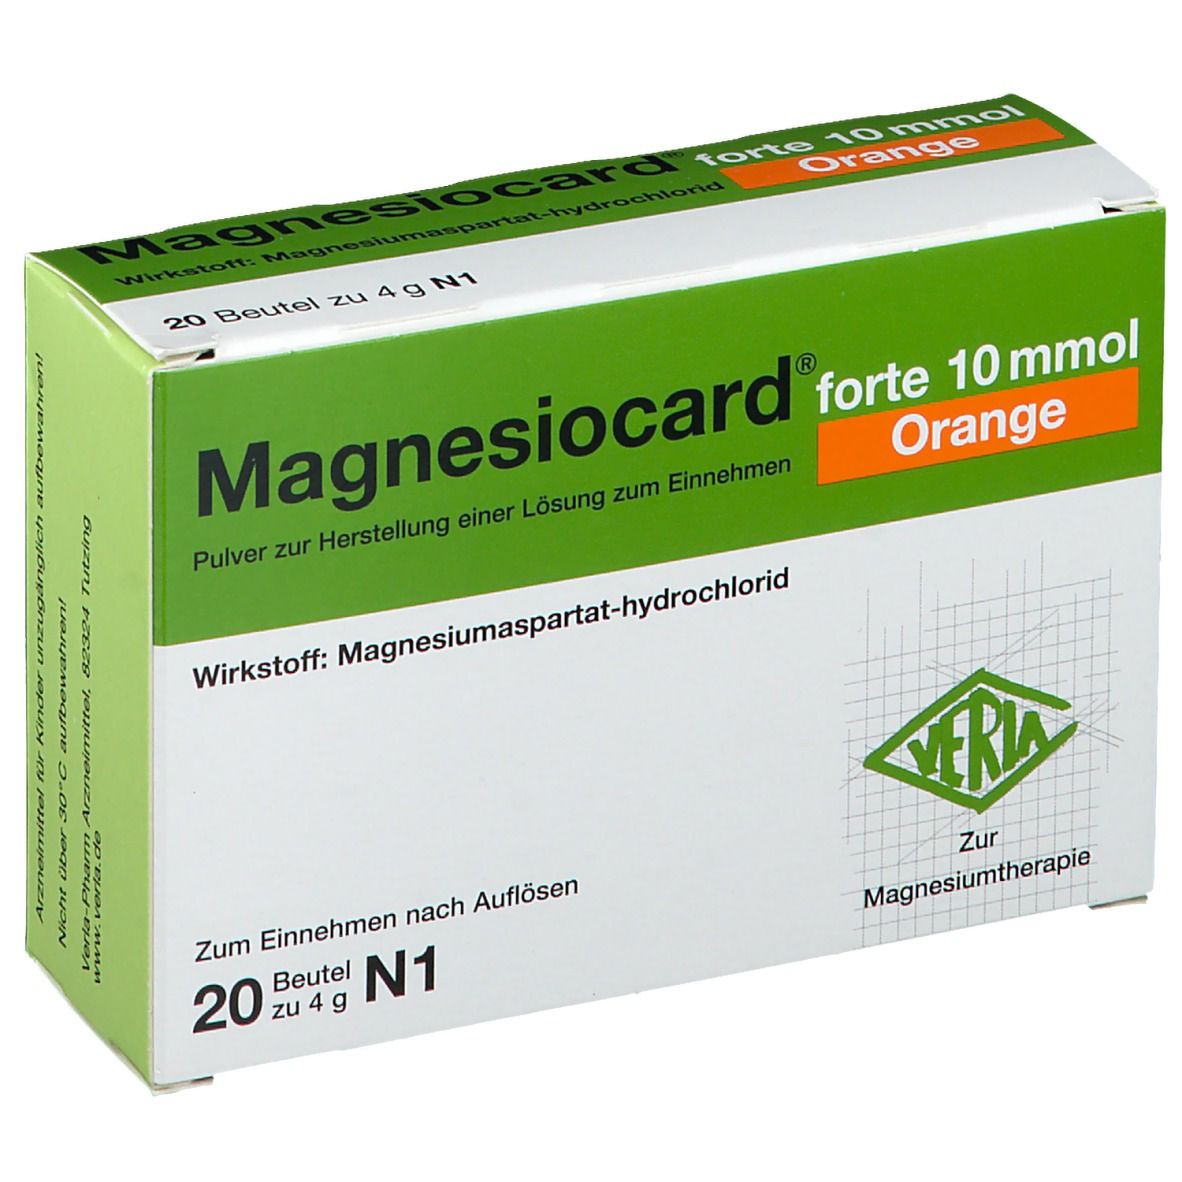 Magnesiocard® forte 10mmol Orange Pulver